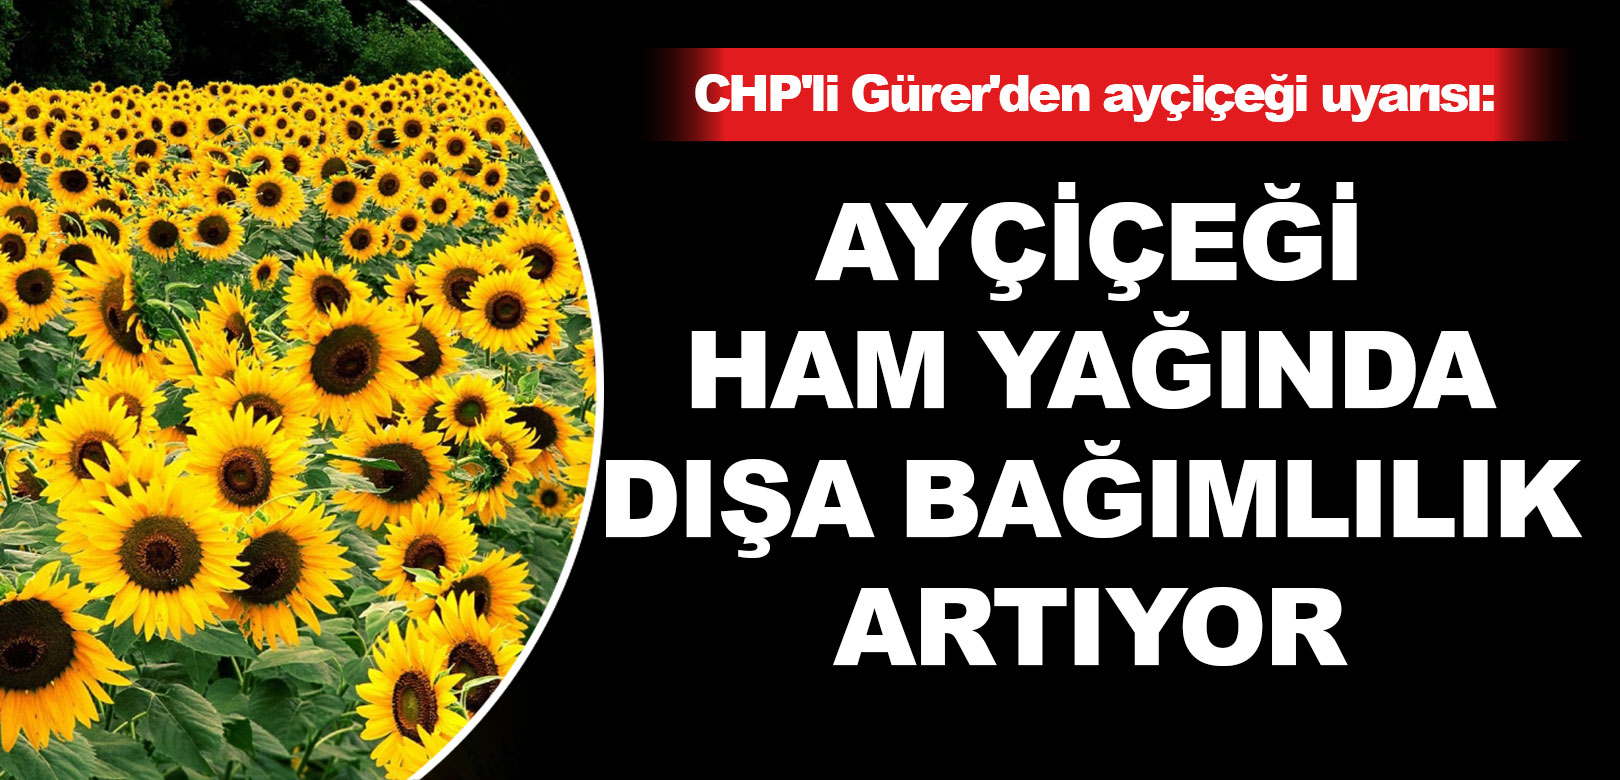 CHP’li Gürer’den ayçiçeği uyarısı: Ayçiçeği ham yağında dışa bağımlılık artıyor